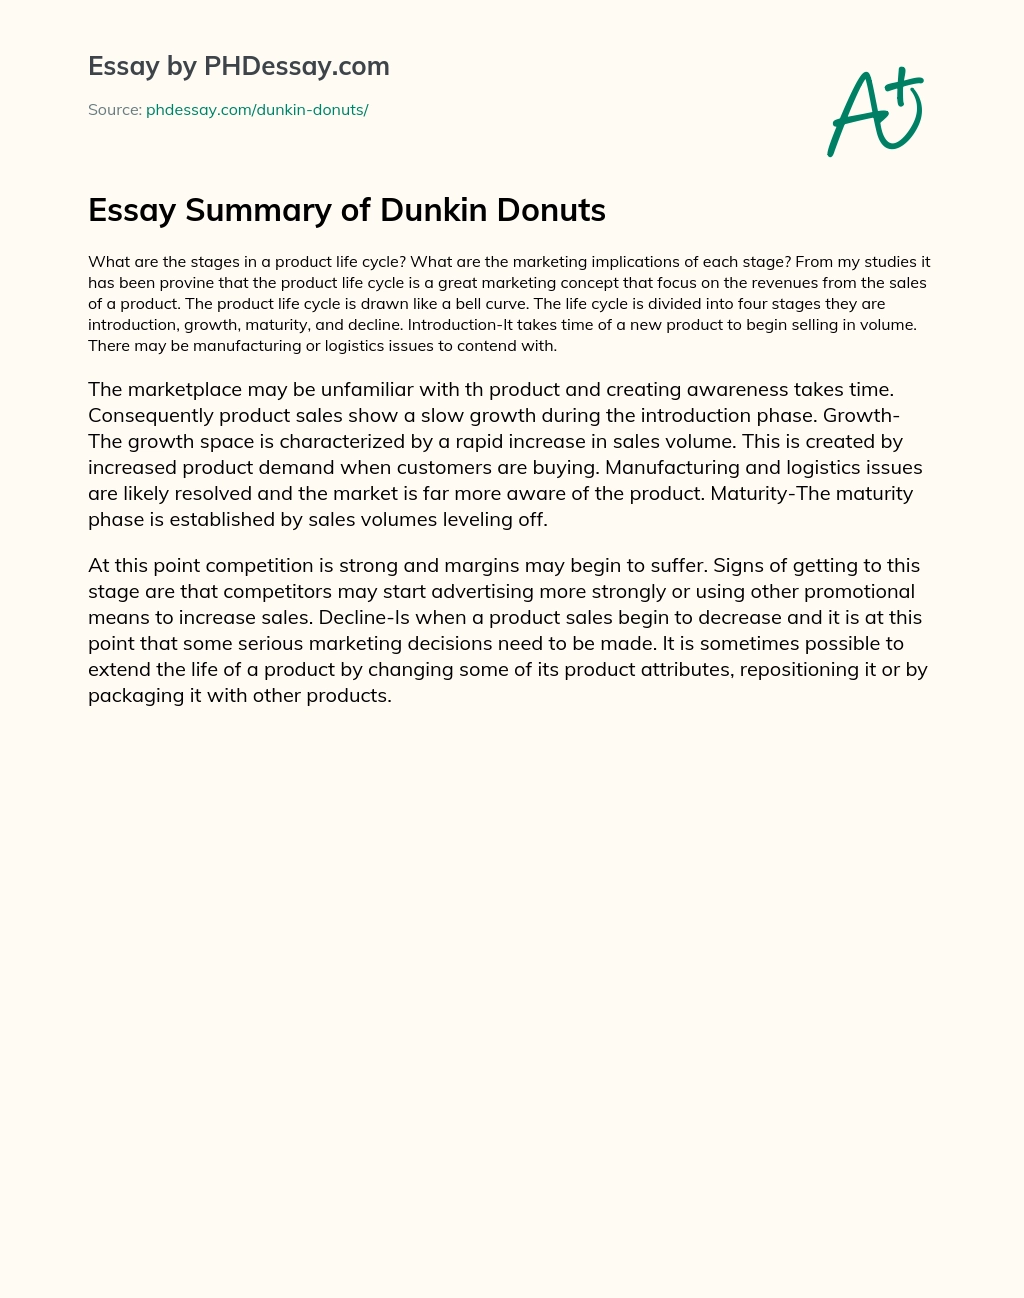 Essay Summary of Dunkin Donuts essay